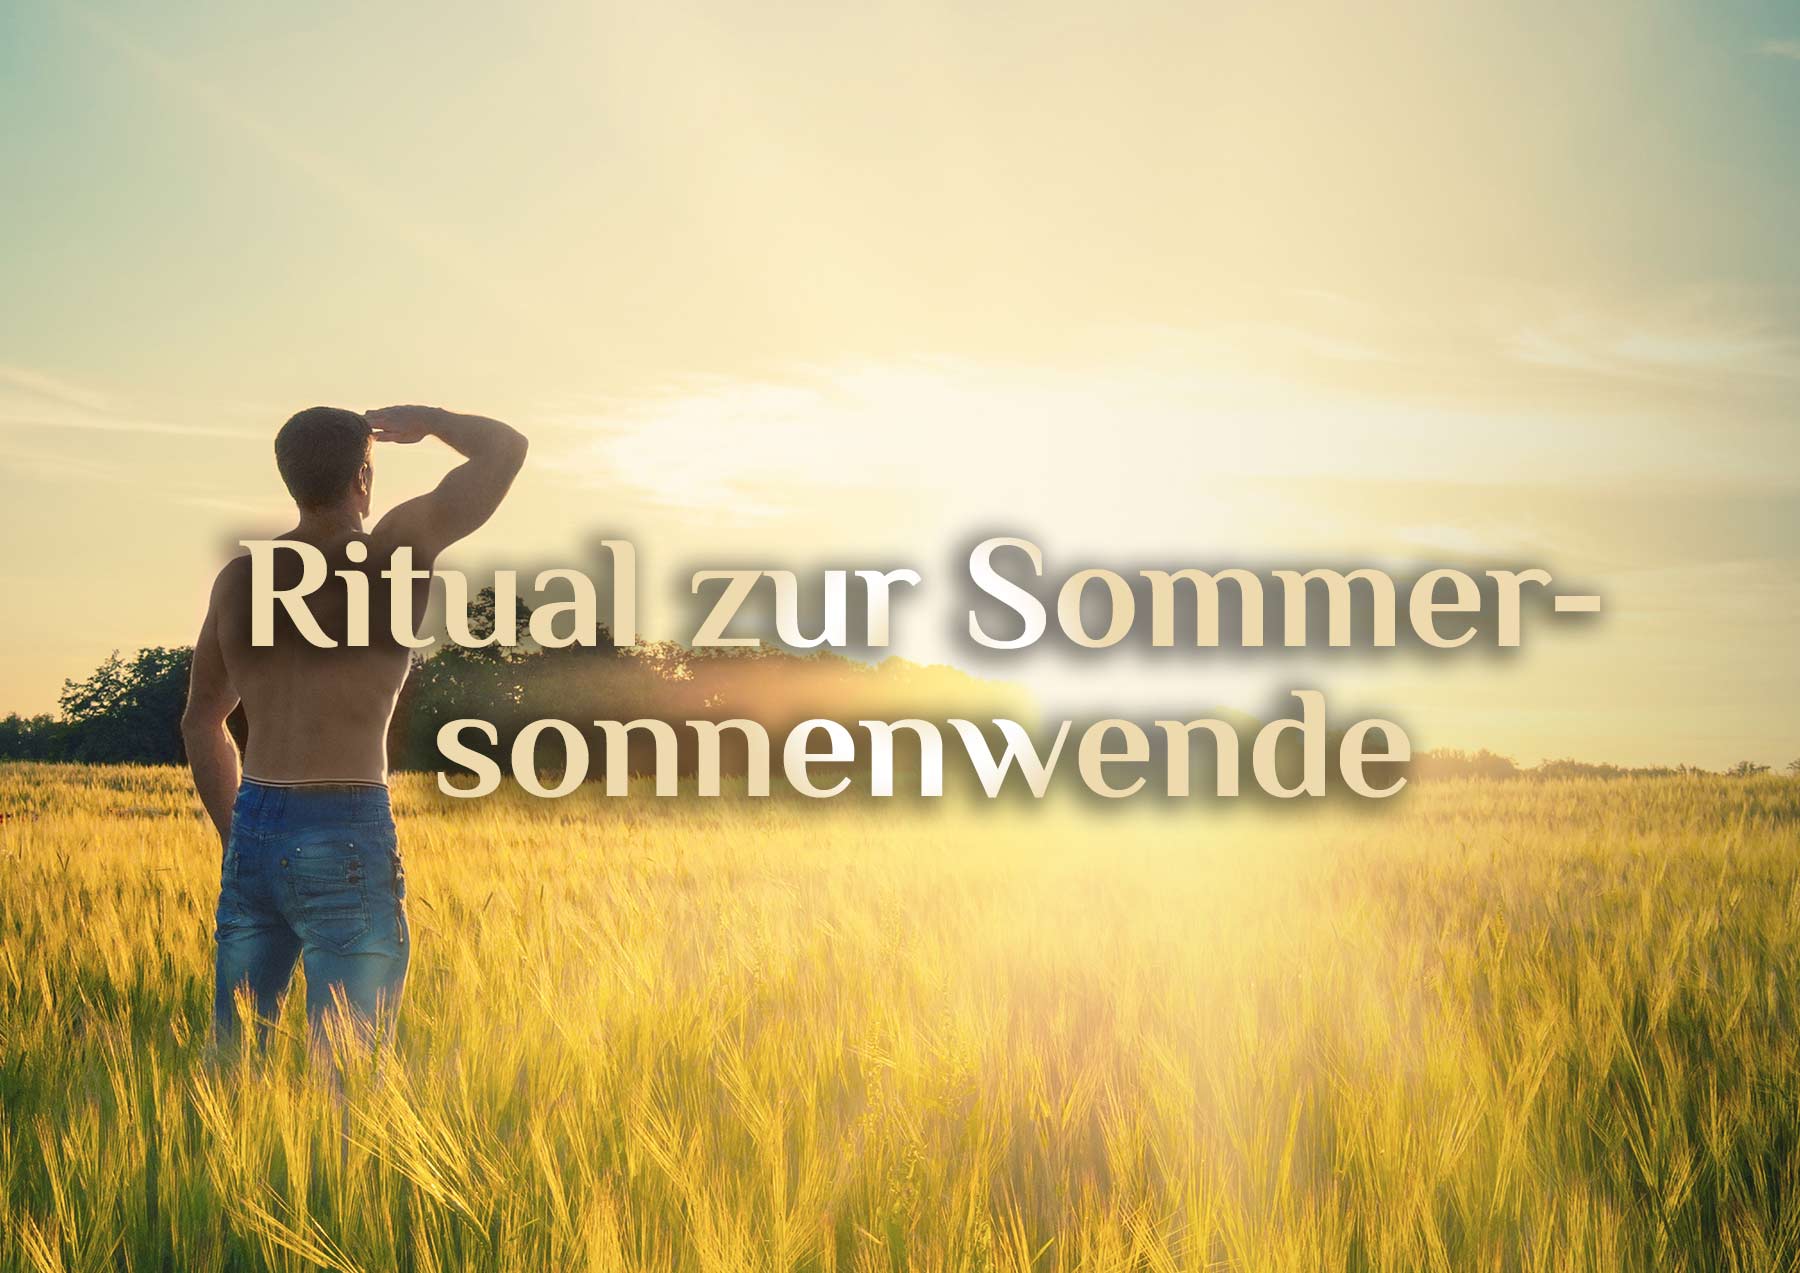 Sommersonnenwende 🌞 Mittsommernacht 🌞 Ritual für Litha am 21. Juni